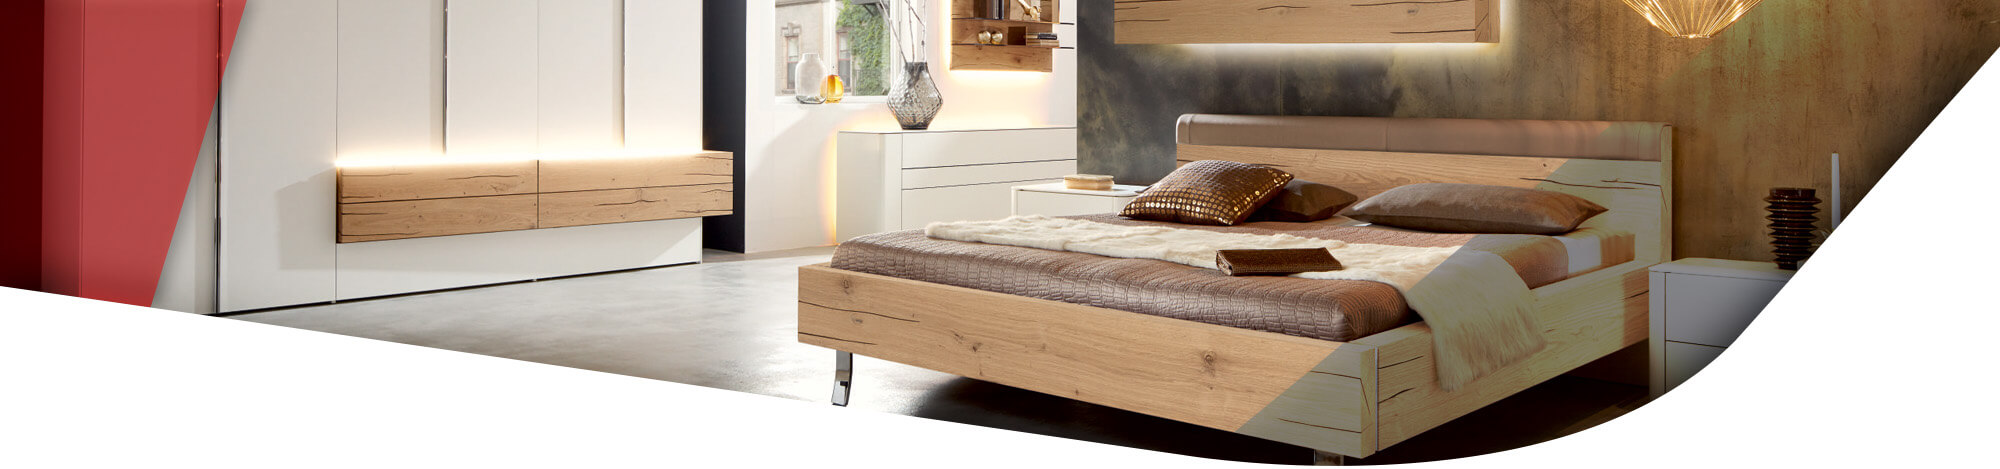 Schlafzimmer mit hellem Holzbett und weißem Kleiderschrank mit Holzakzent